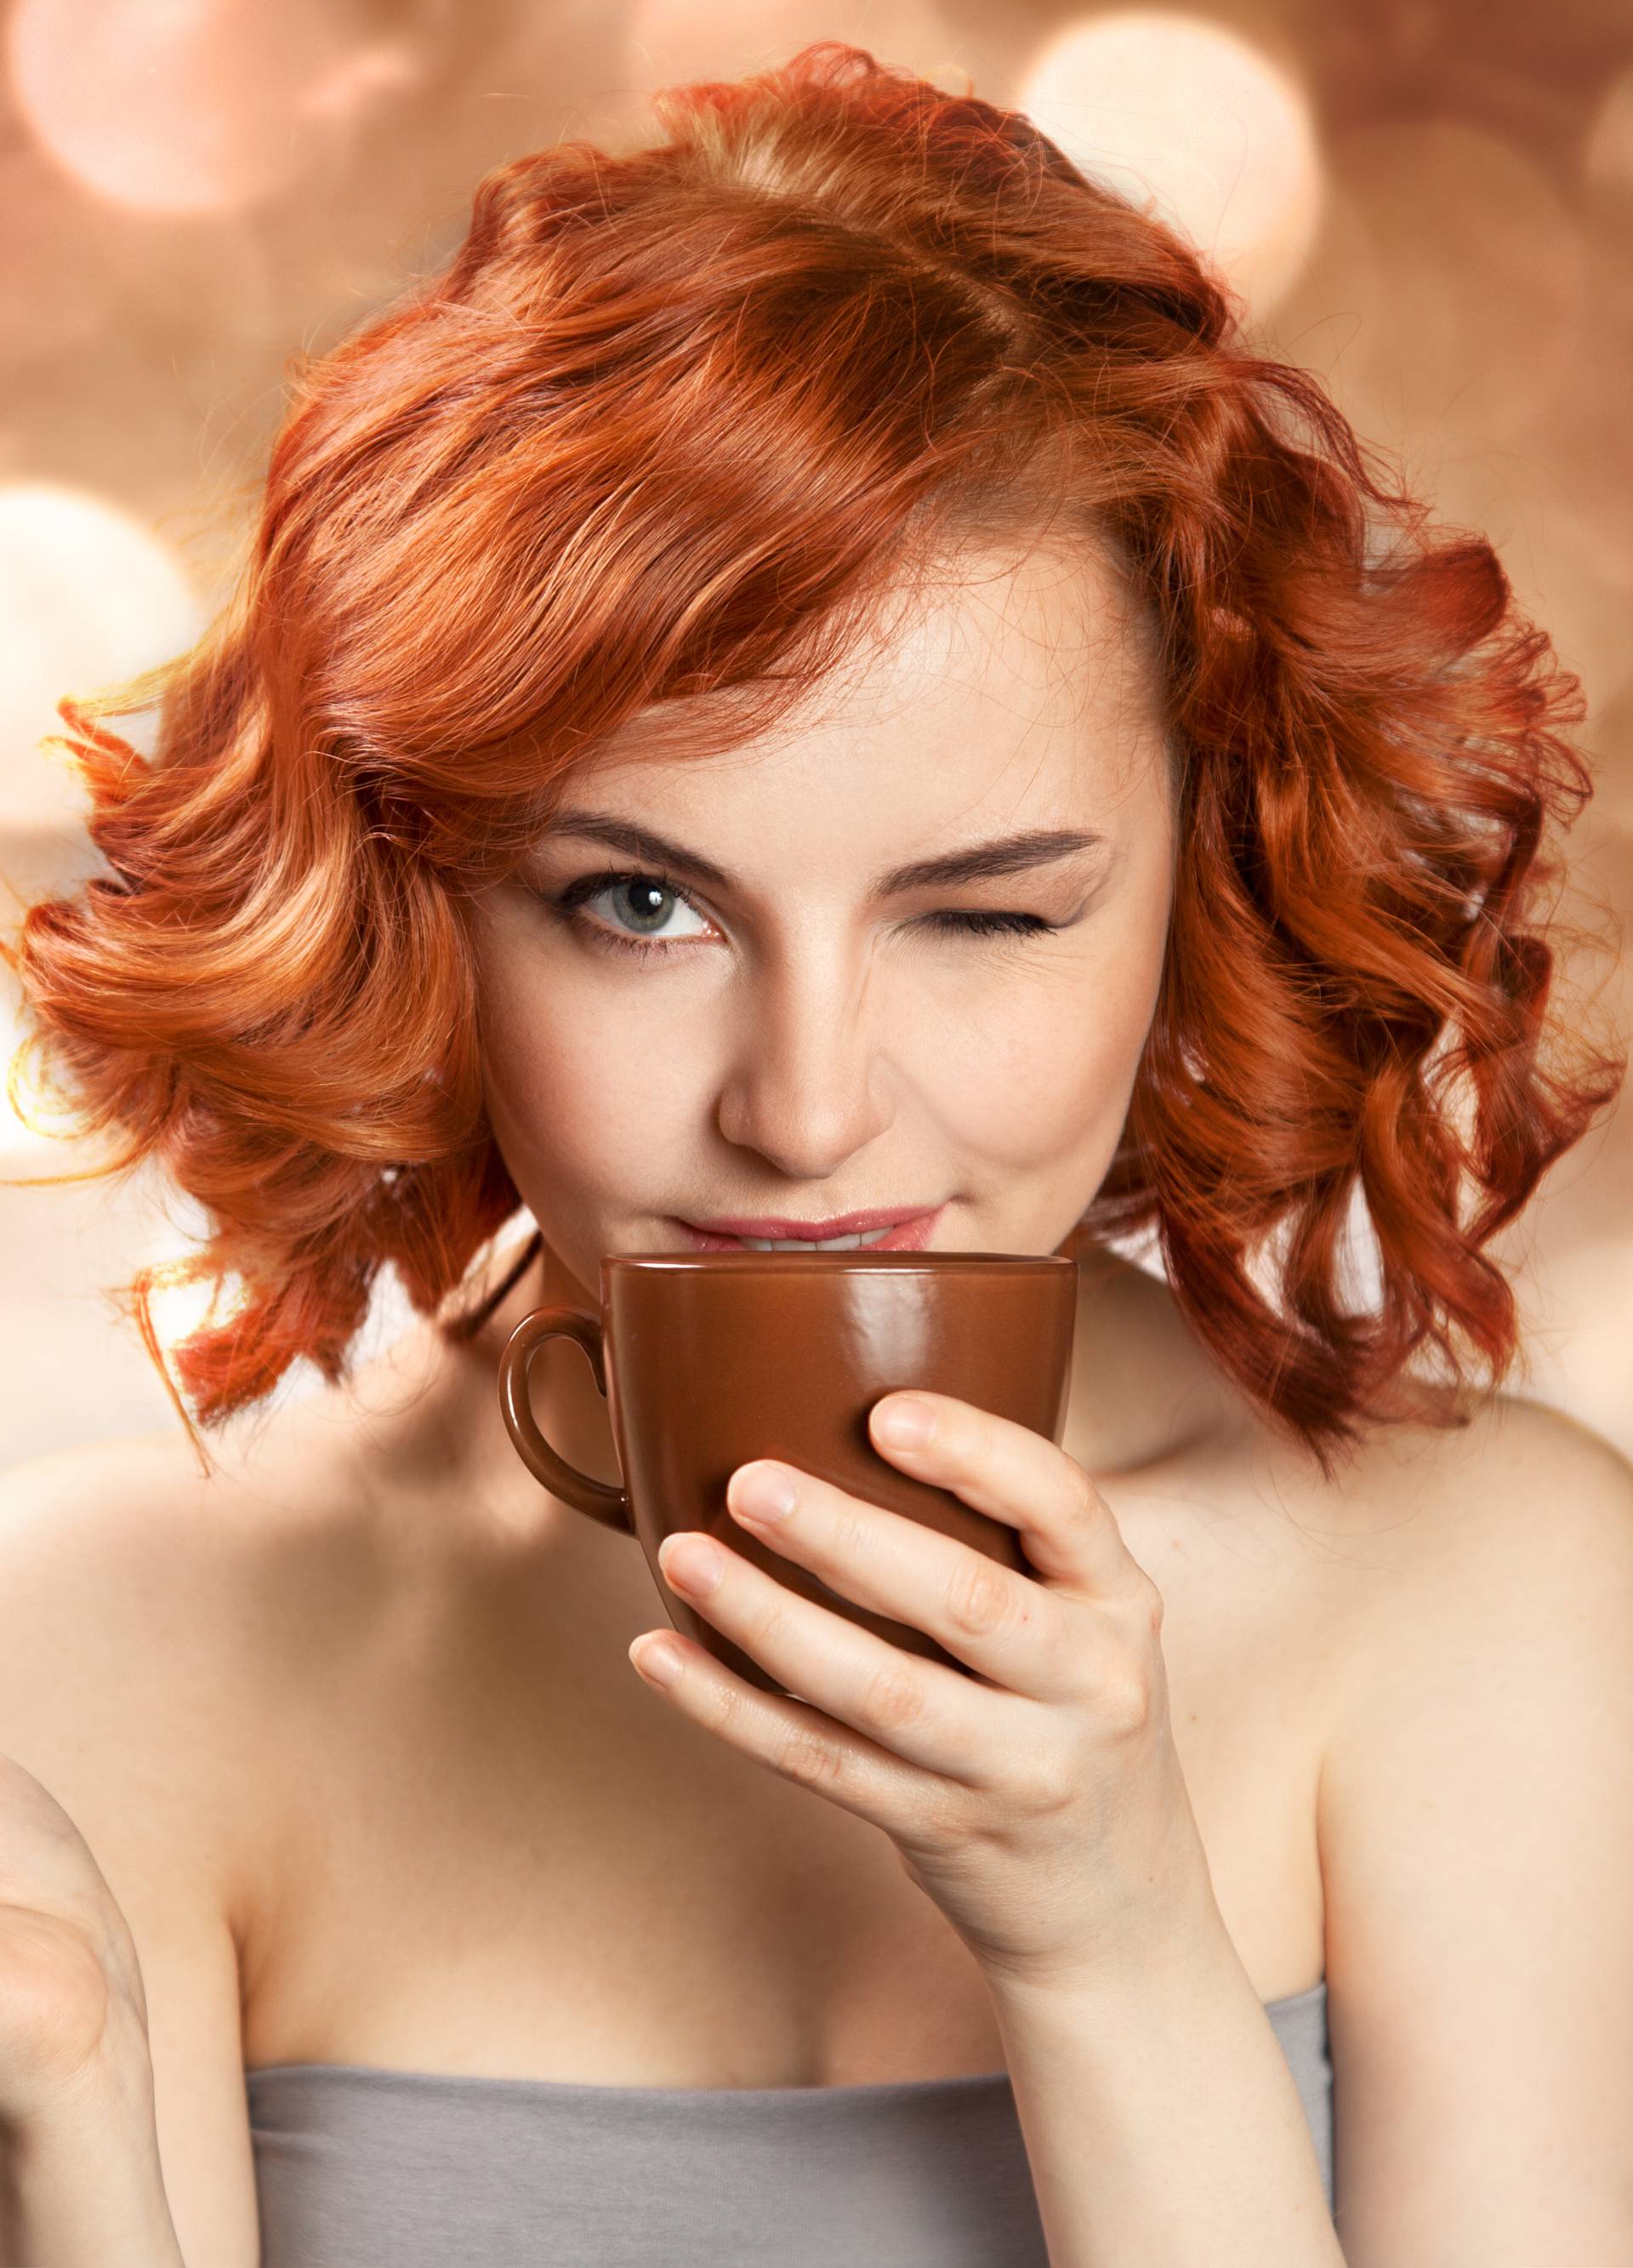 Ispijanje 7 šalica kave na dan smanjuje rizik od prerane smrti